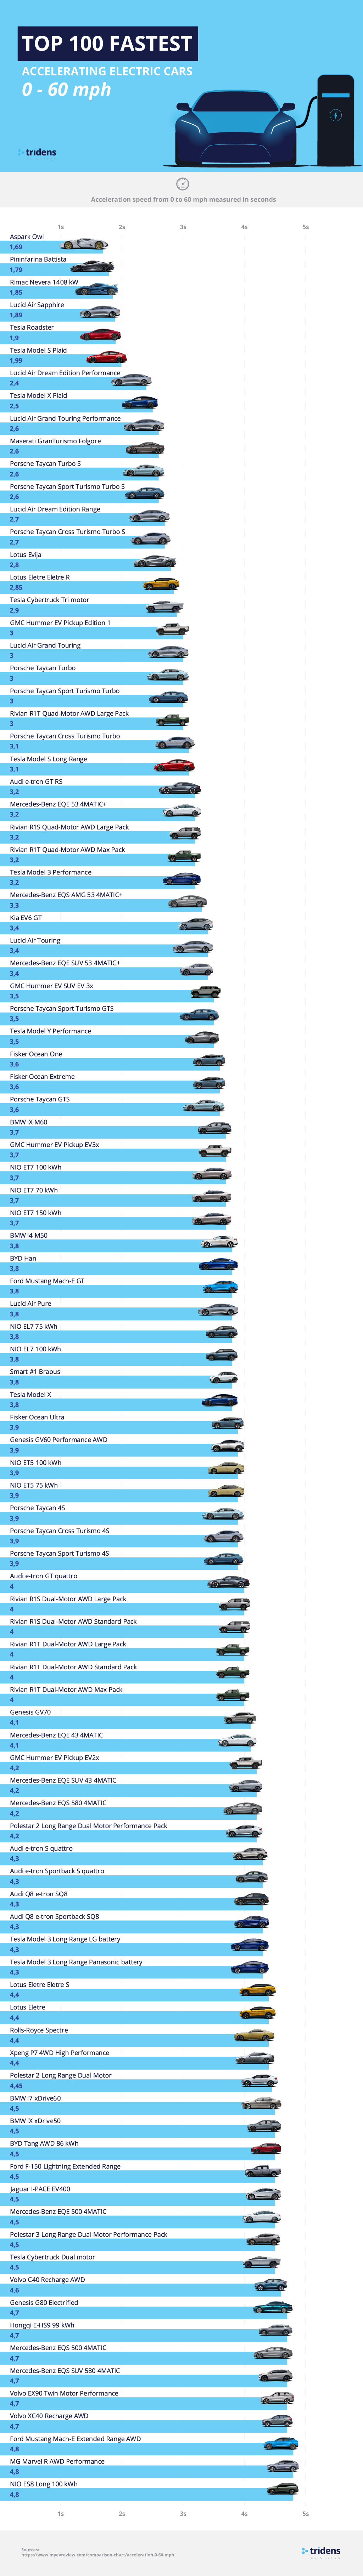 Top 100 der am schnellsten beschleunigenden Elektroautos 0 - 60 mph